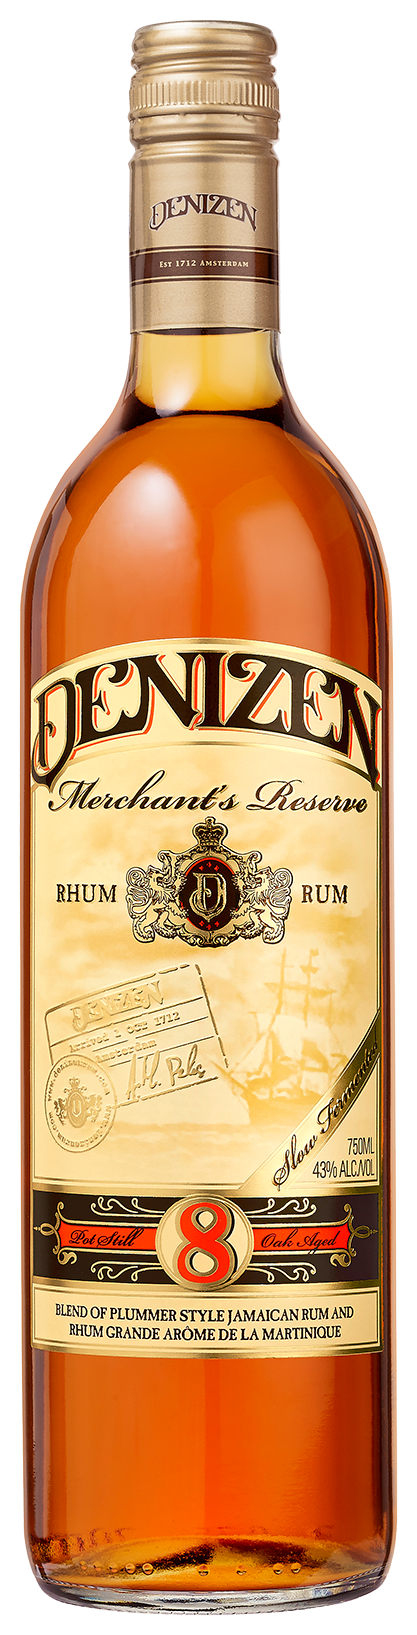 Denizen 8 Year Old Merchant's Reserve Rum